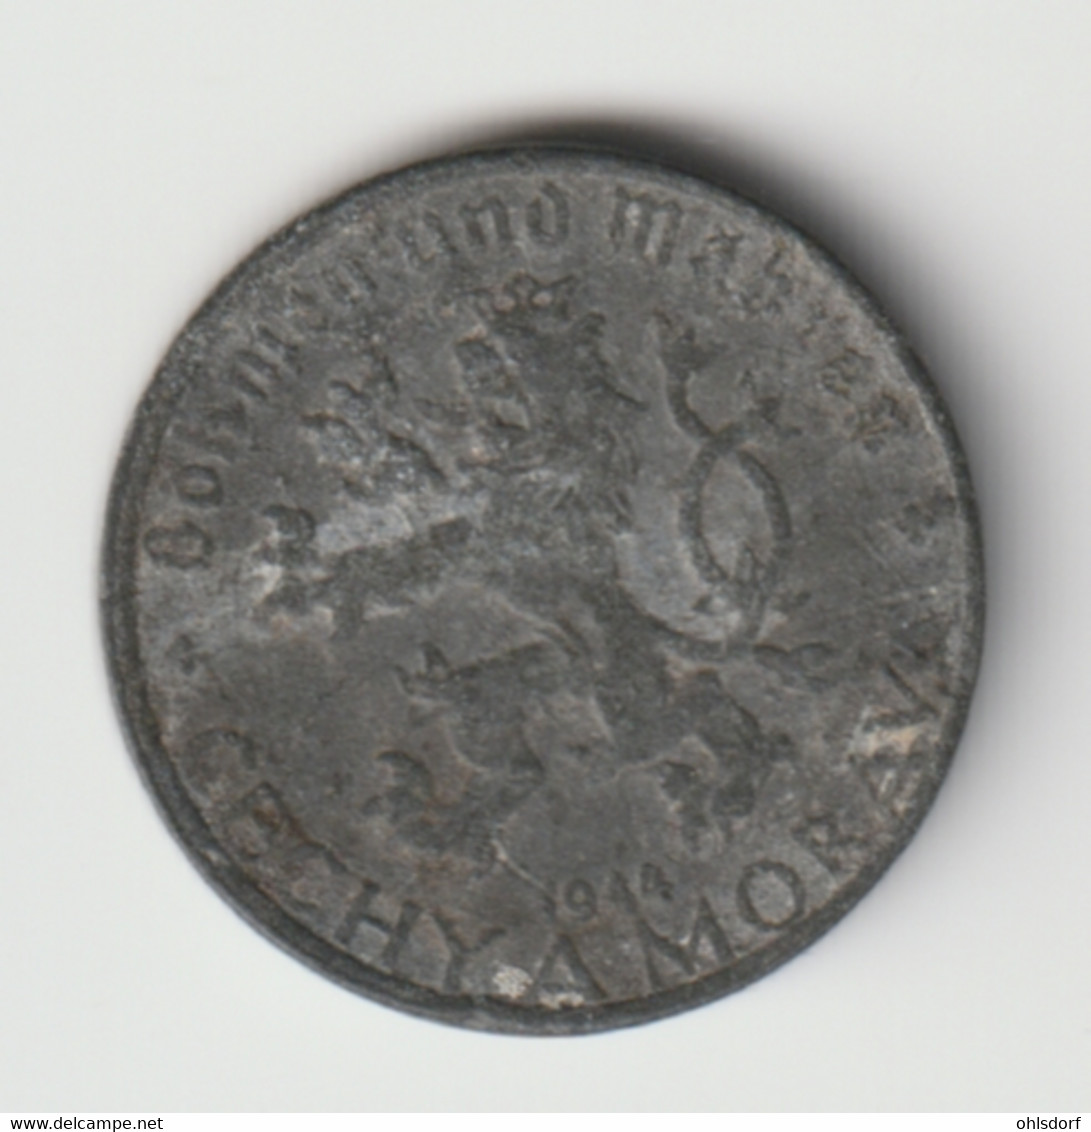 BÖHMEN UND MÄHREN 1944: 10 Haleru, KM 1 - Military Coin Minting - WWII